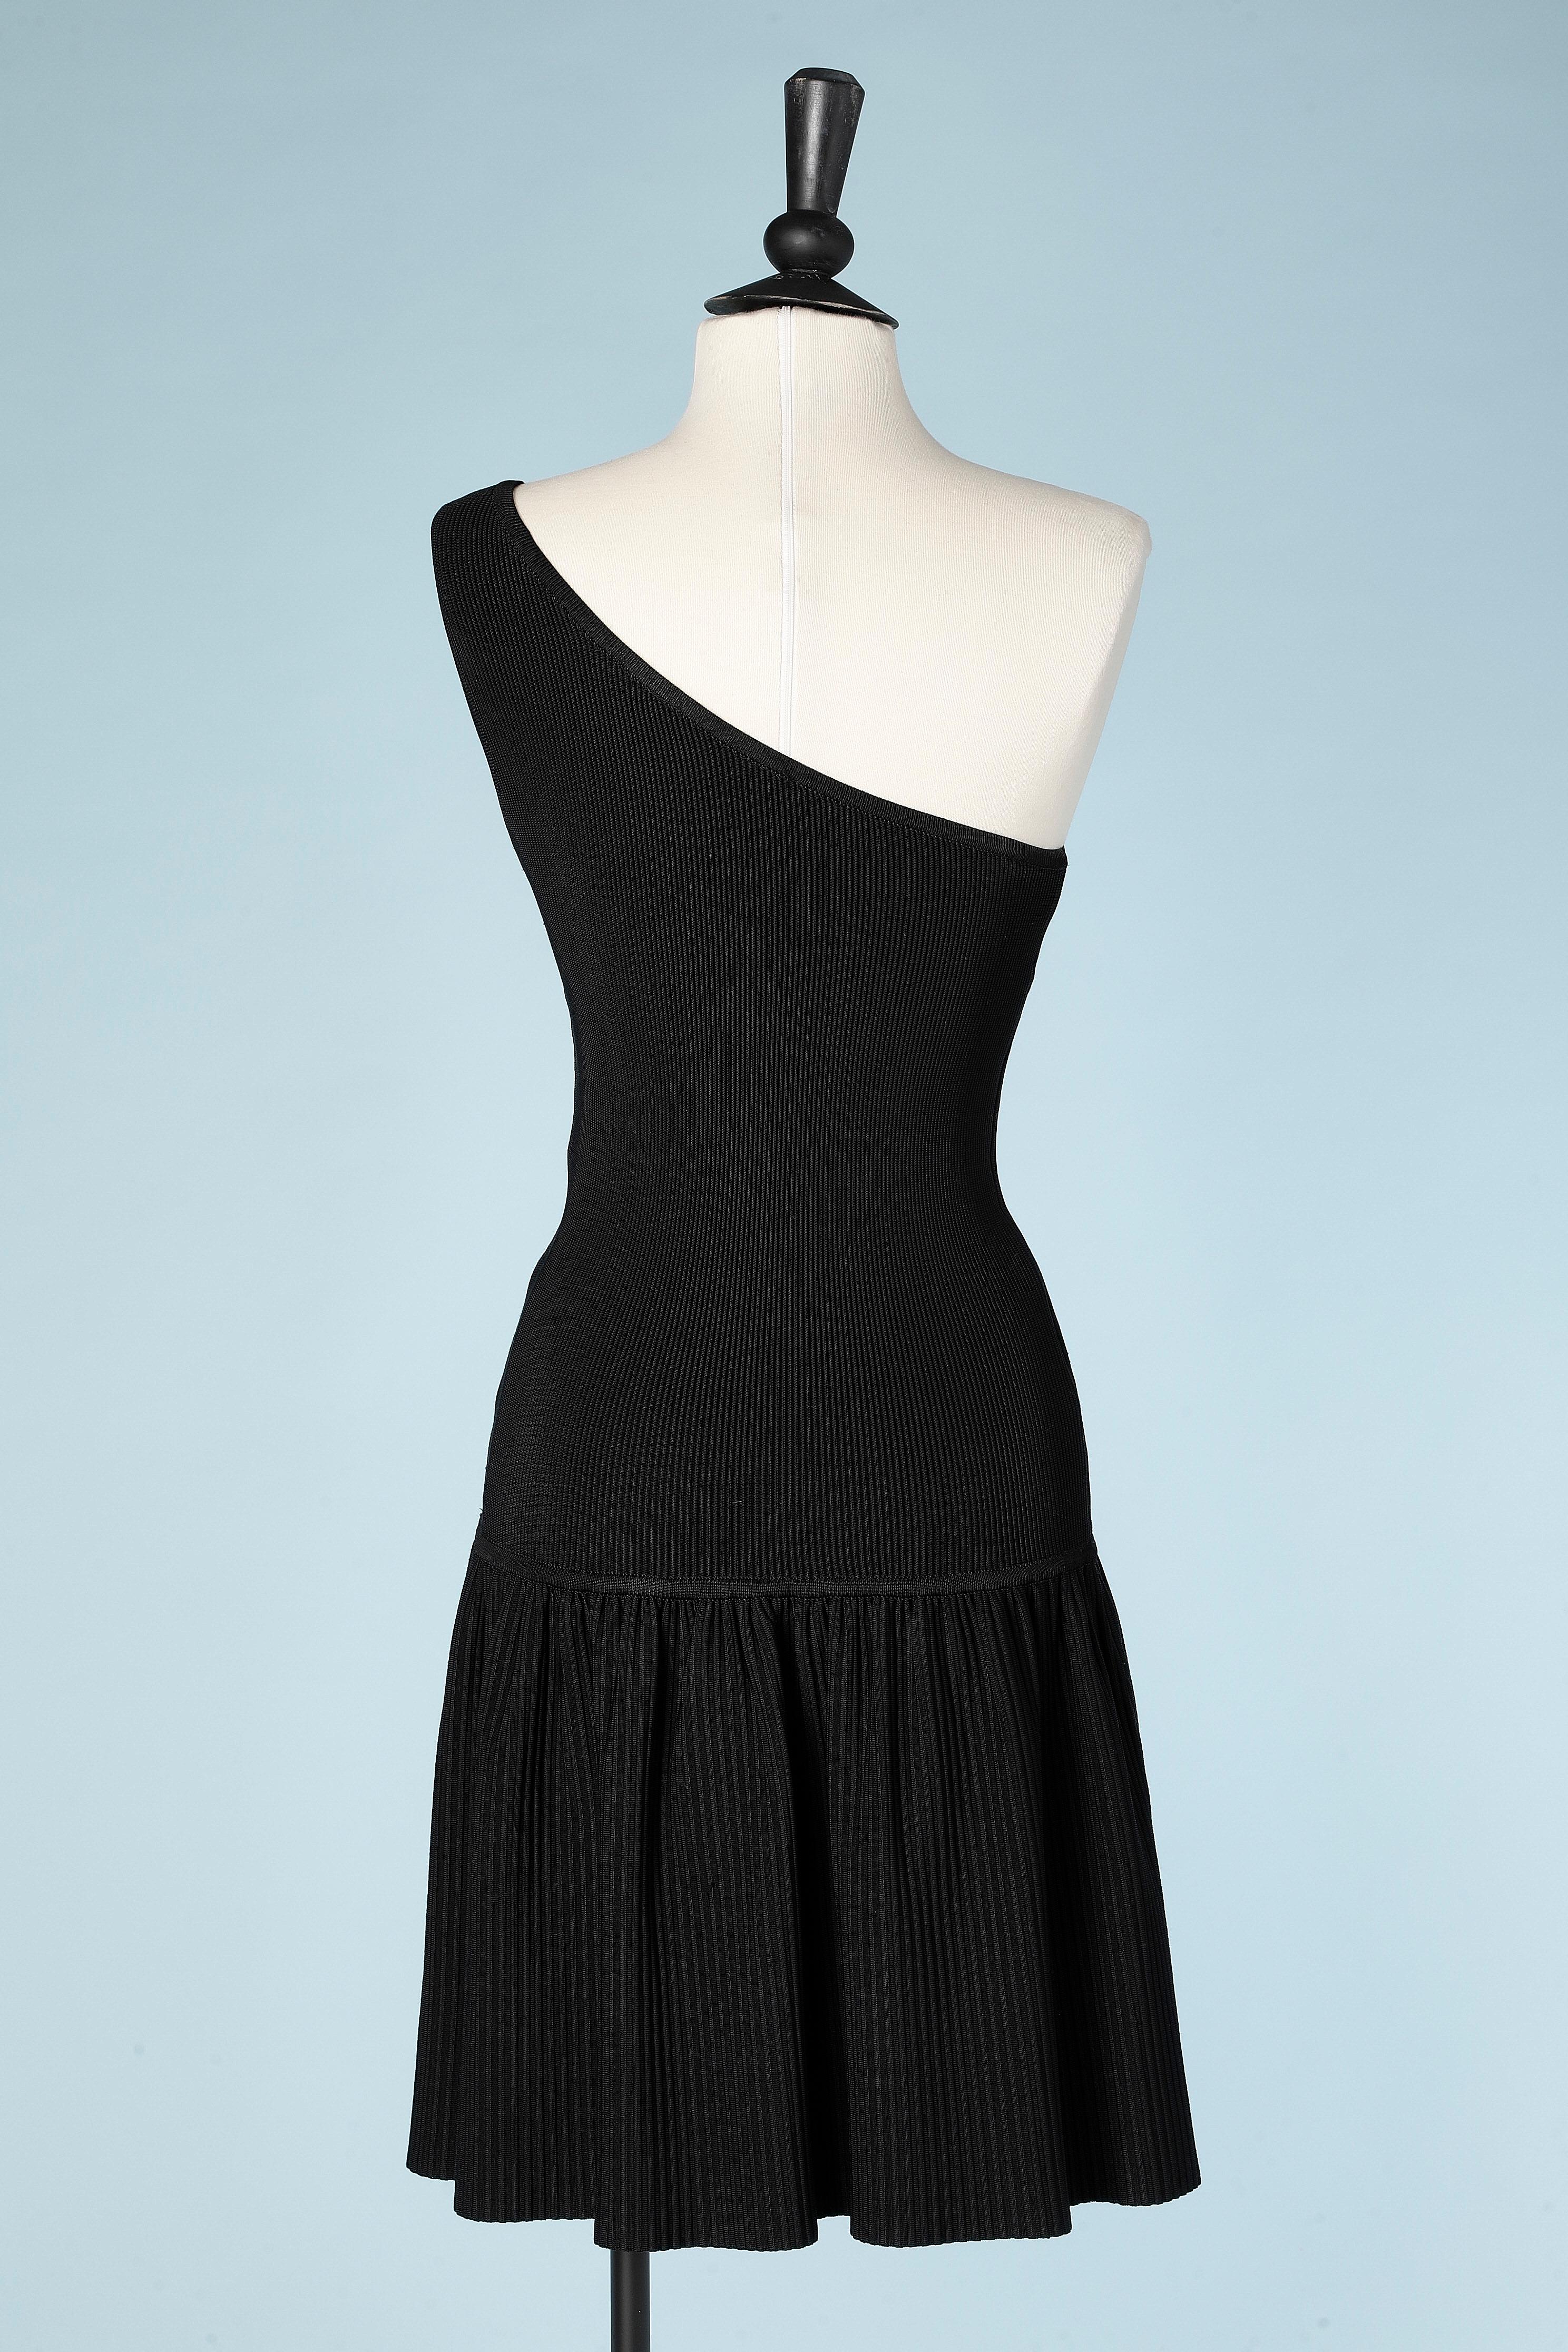 Women's Black asymmetrical dress in rayon knit AlaÏa 